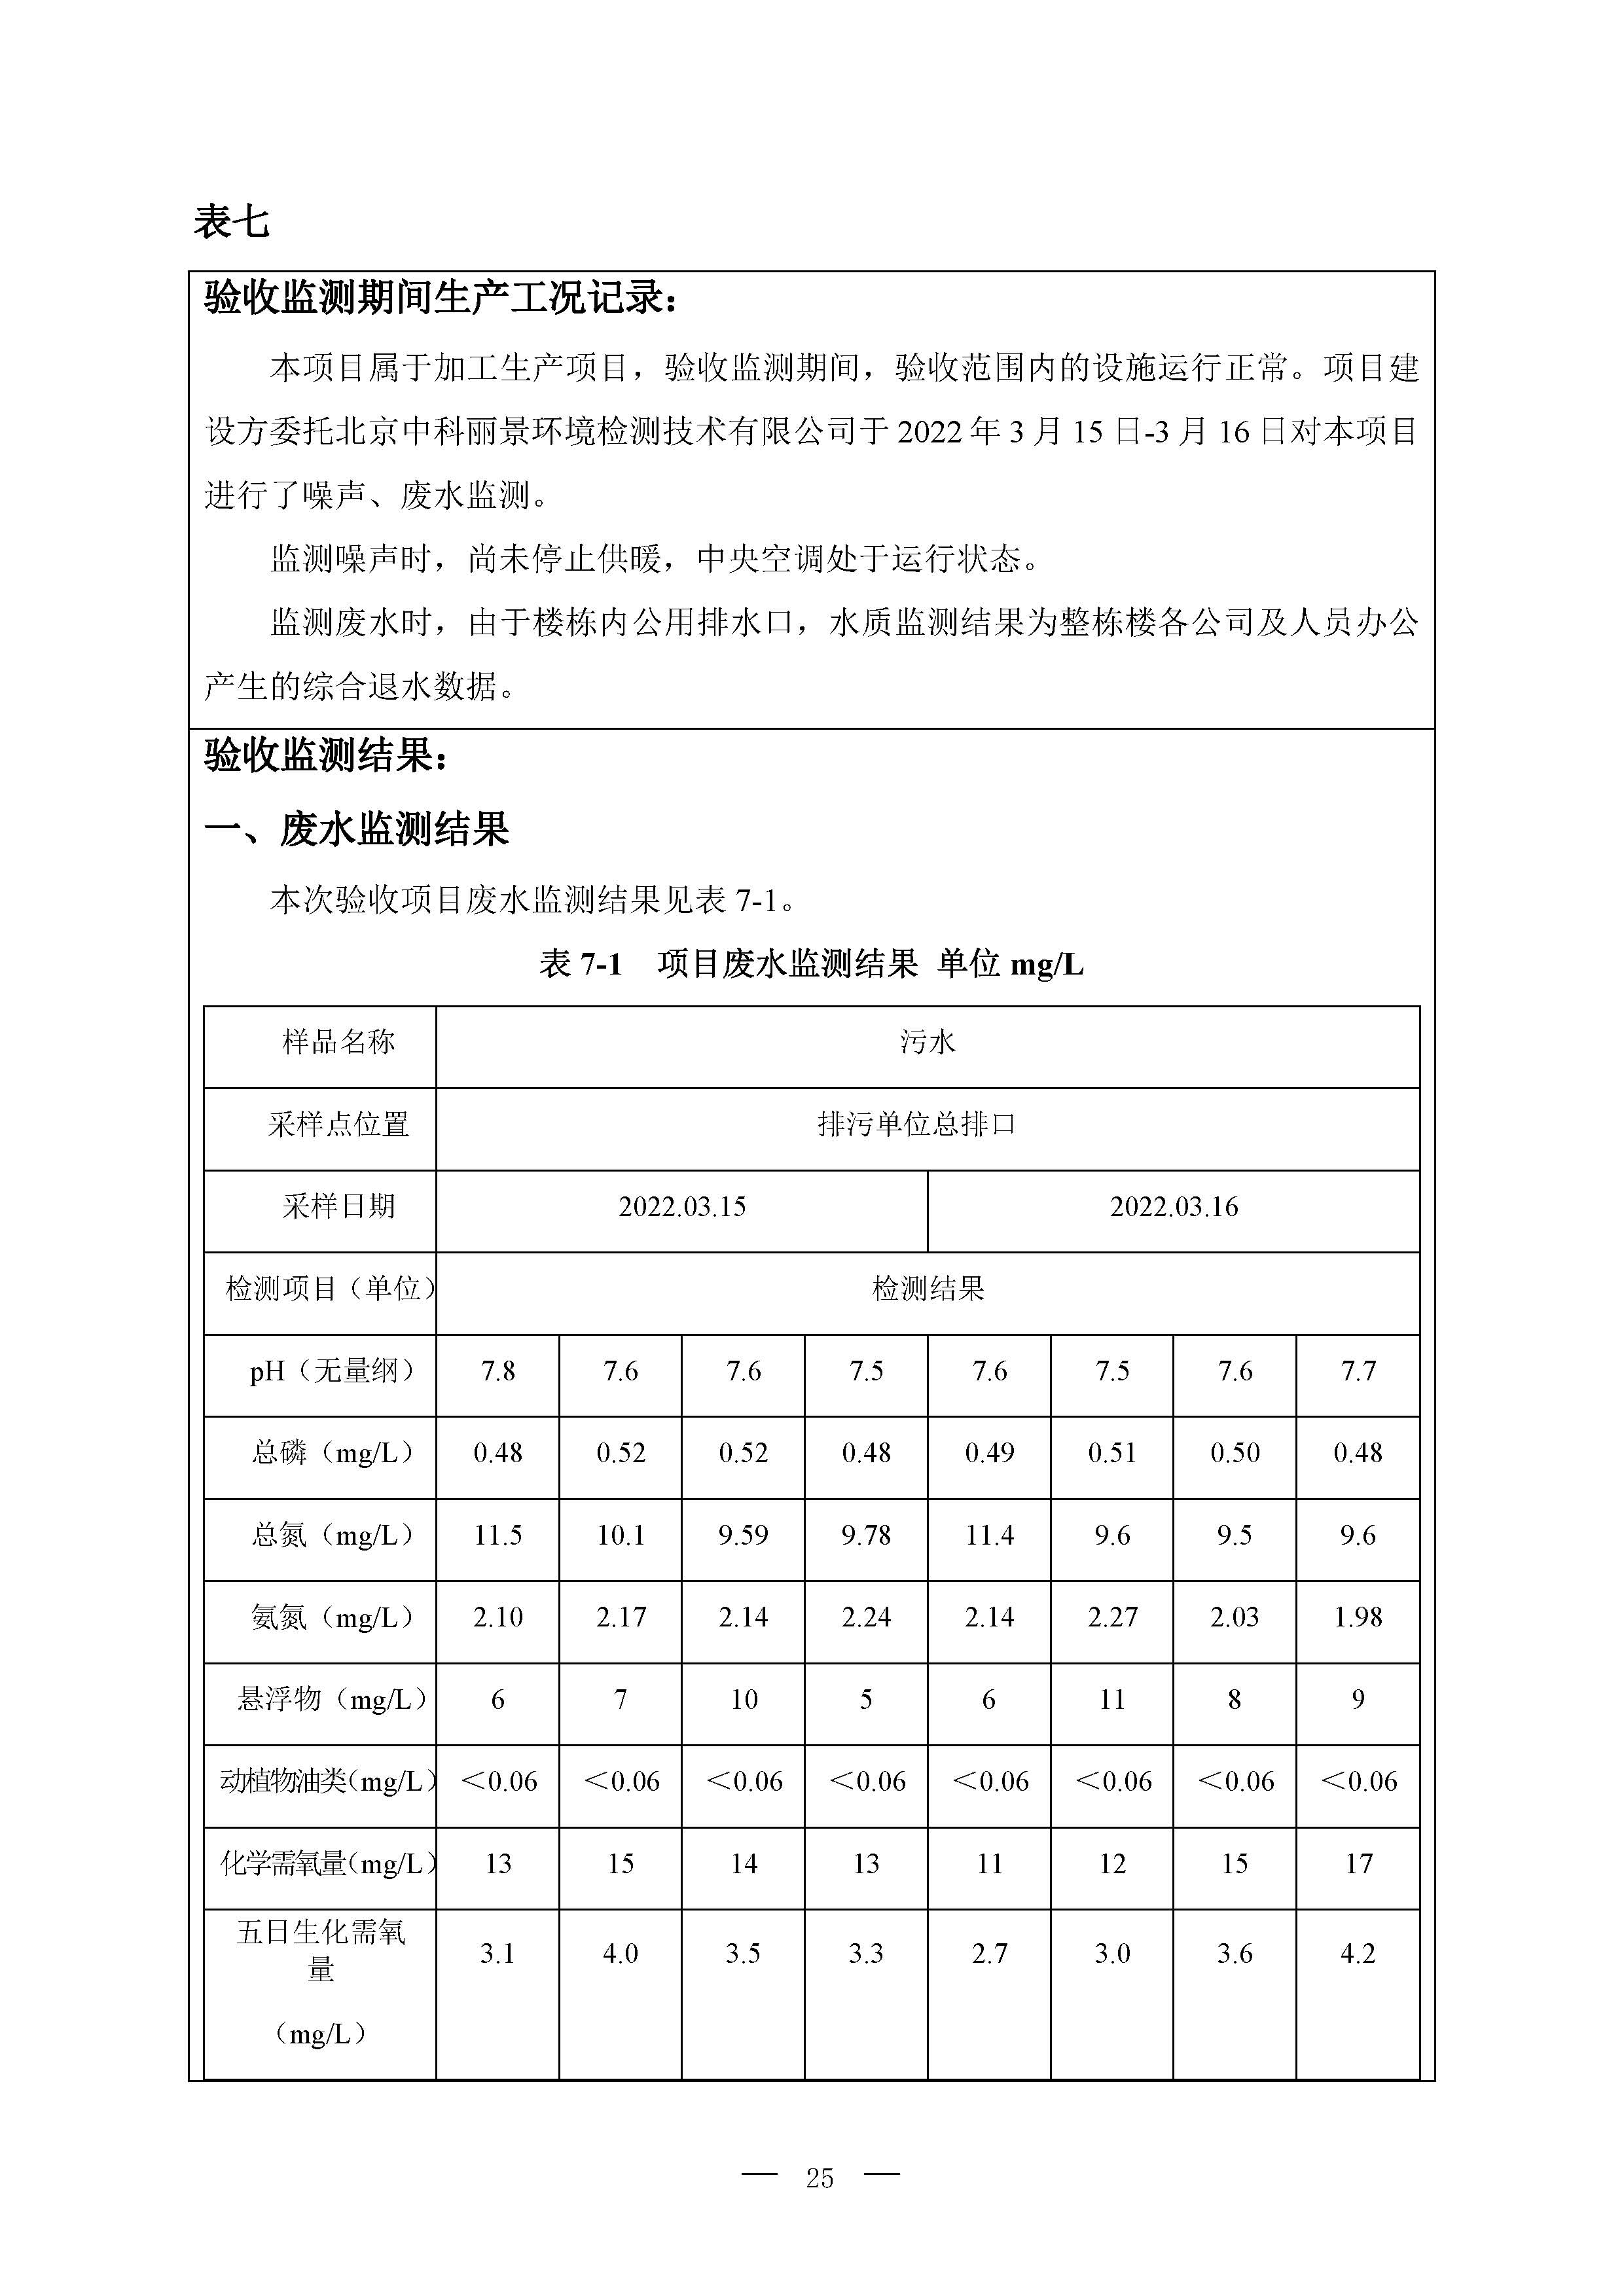 北京博瑞莱智能科技集团有限公司项目竣工环境保护验收监测报告全本公示(图29)